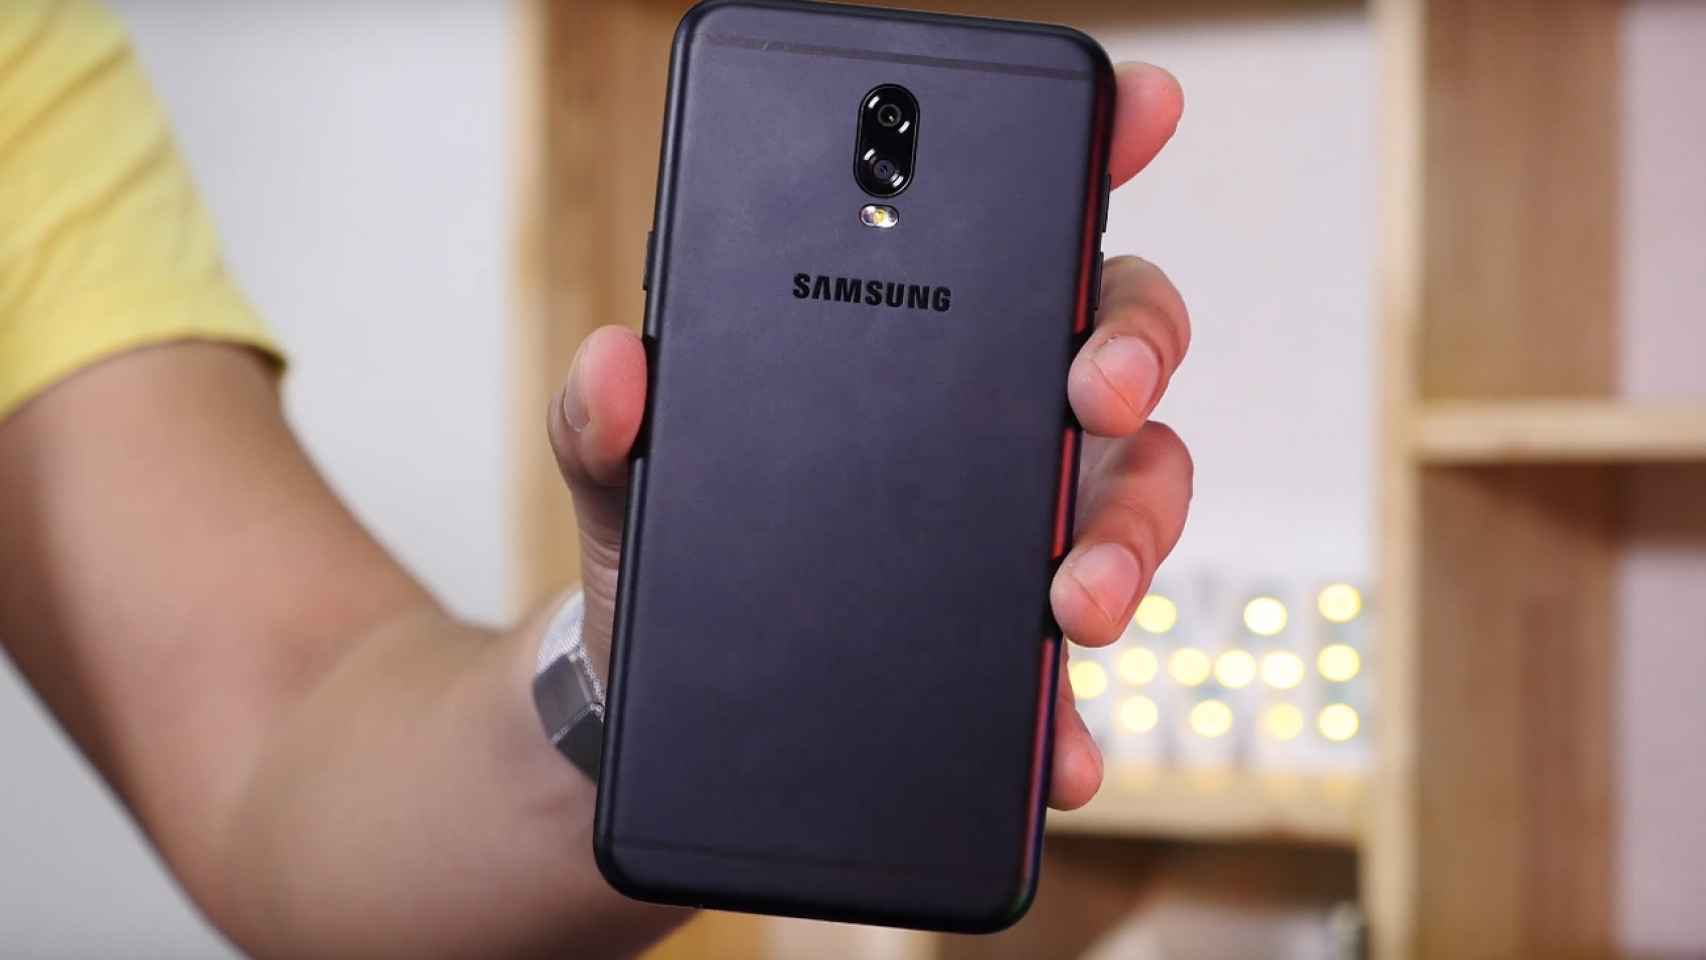 El nuevo Samsung Galaxy J7+ con doble cámara filtrado en una vídeo review